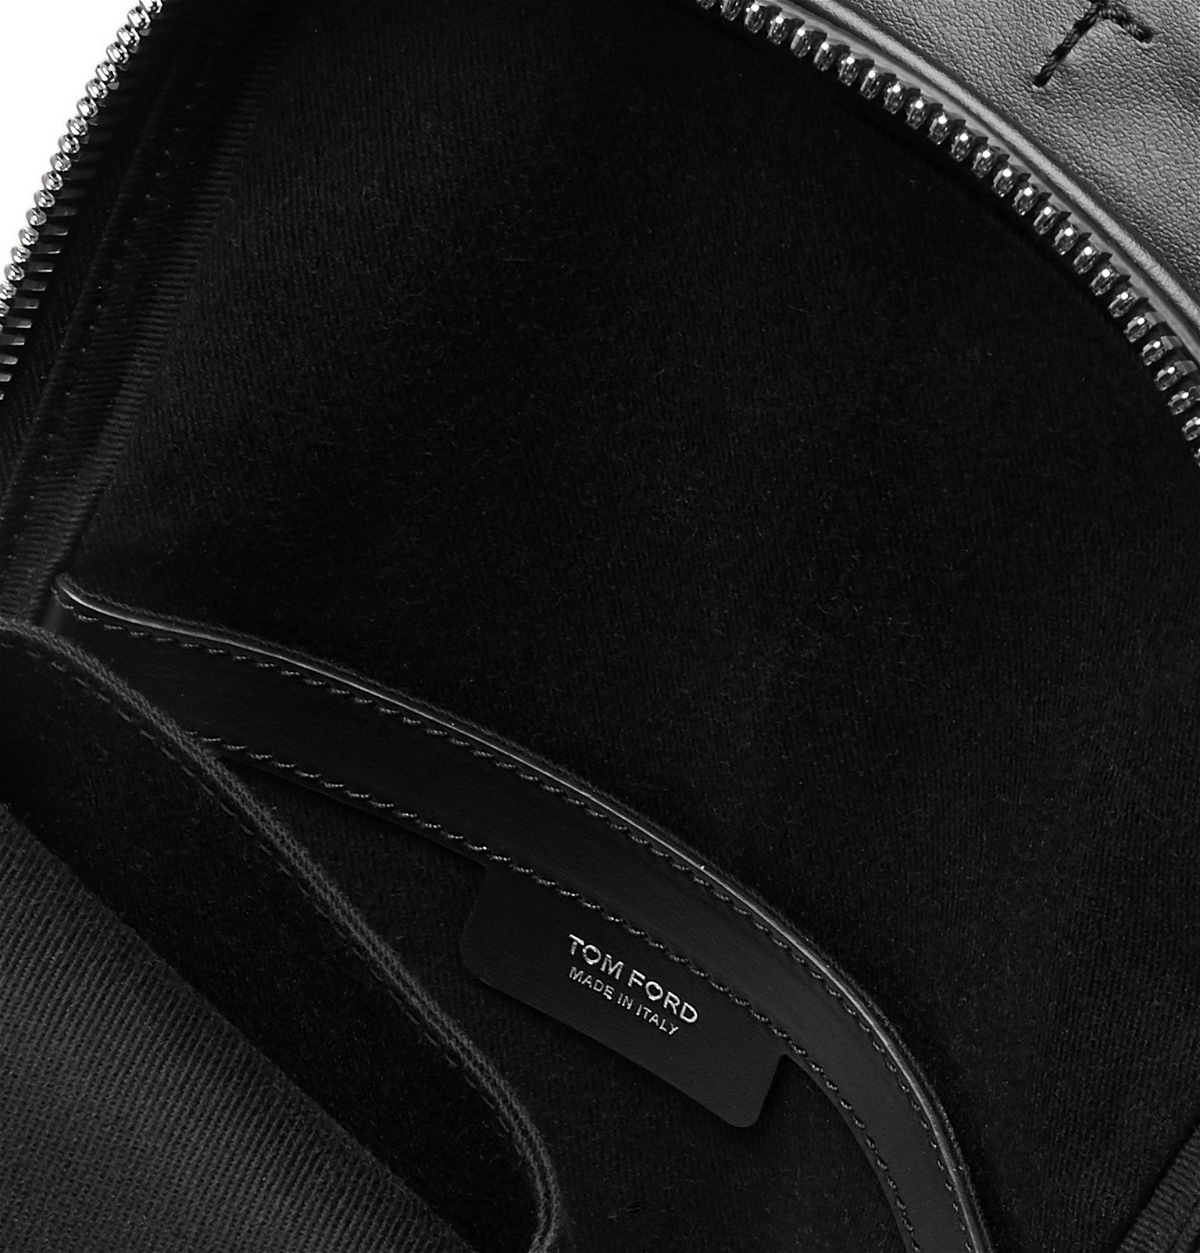 TOM FORD - Full-Grain Leather Sling Backpack - Black TOM FORD